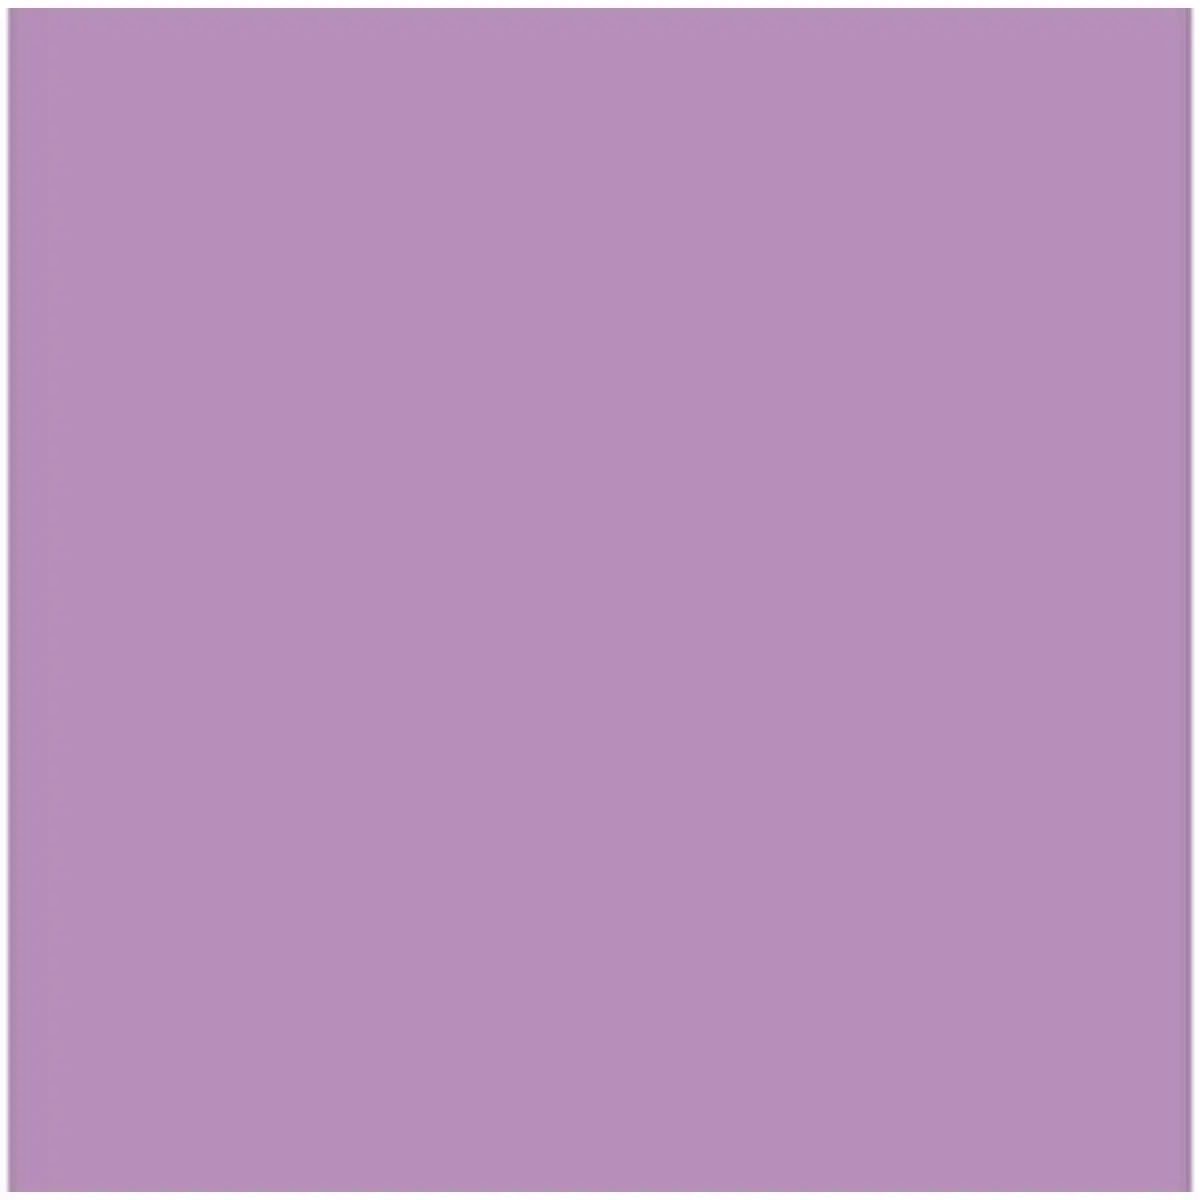 Papier carton iris mauve 50 x 65 cm 25 unites _1141. DIAYTAR SENEGAL - Où Choisir Rime avec Qualité. Découvrez notre sélection soigneusement conçue et choisissez des articles qui incarnent l'excellence et l'innovation.